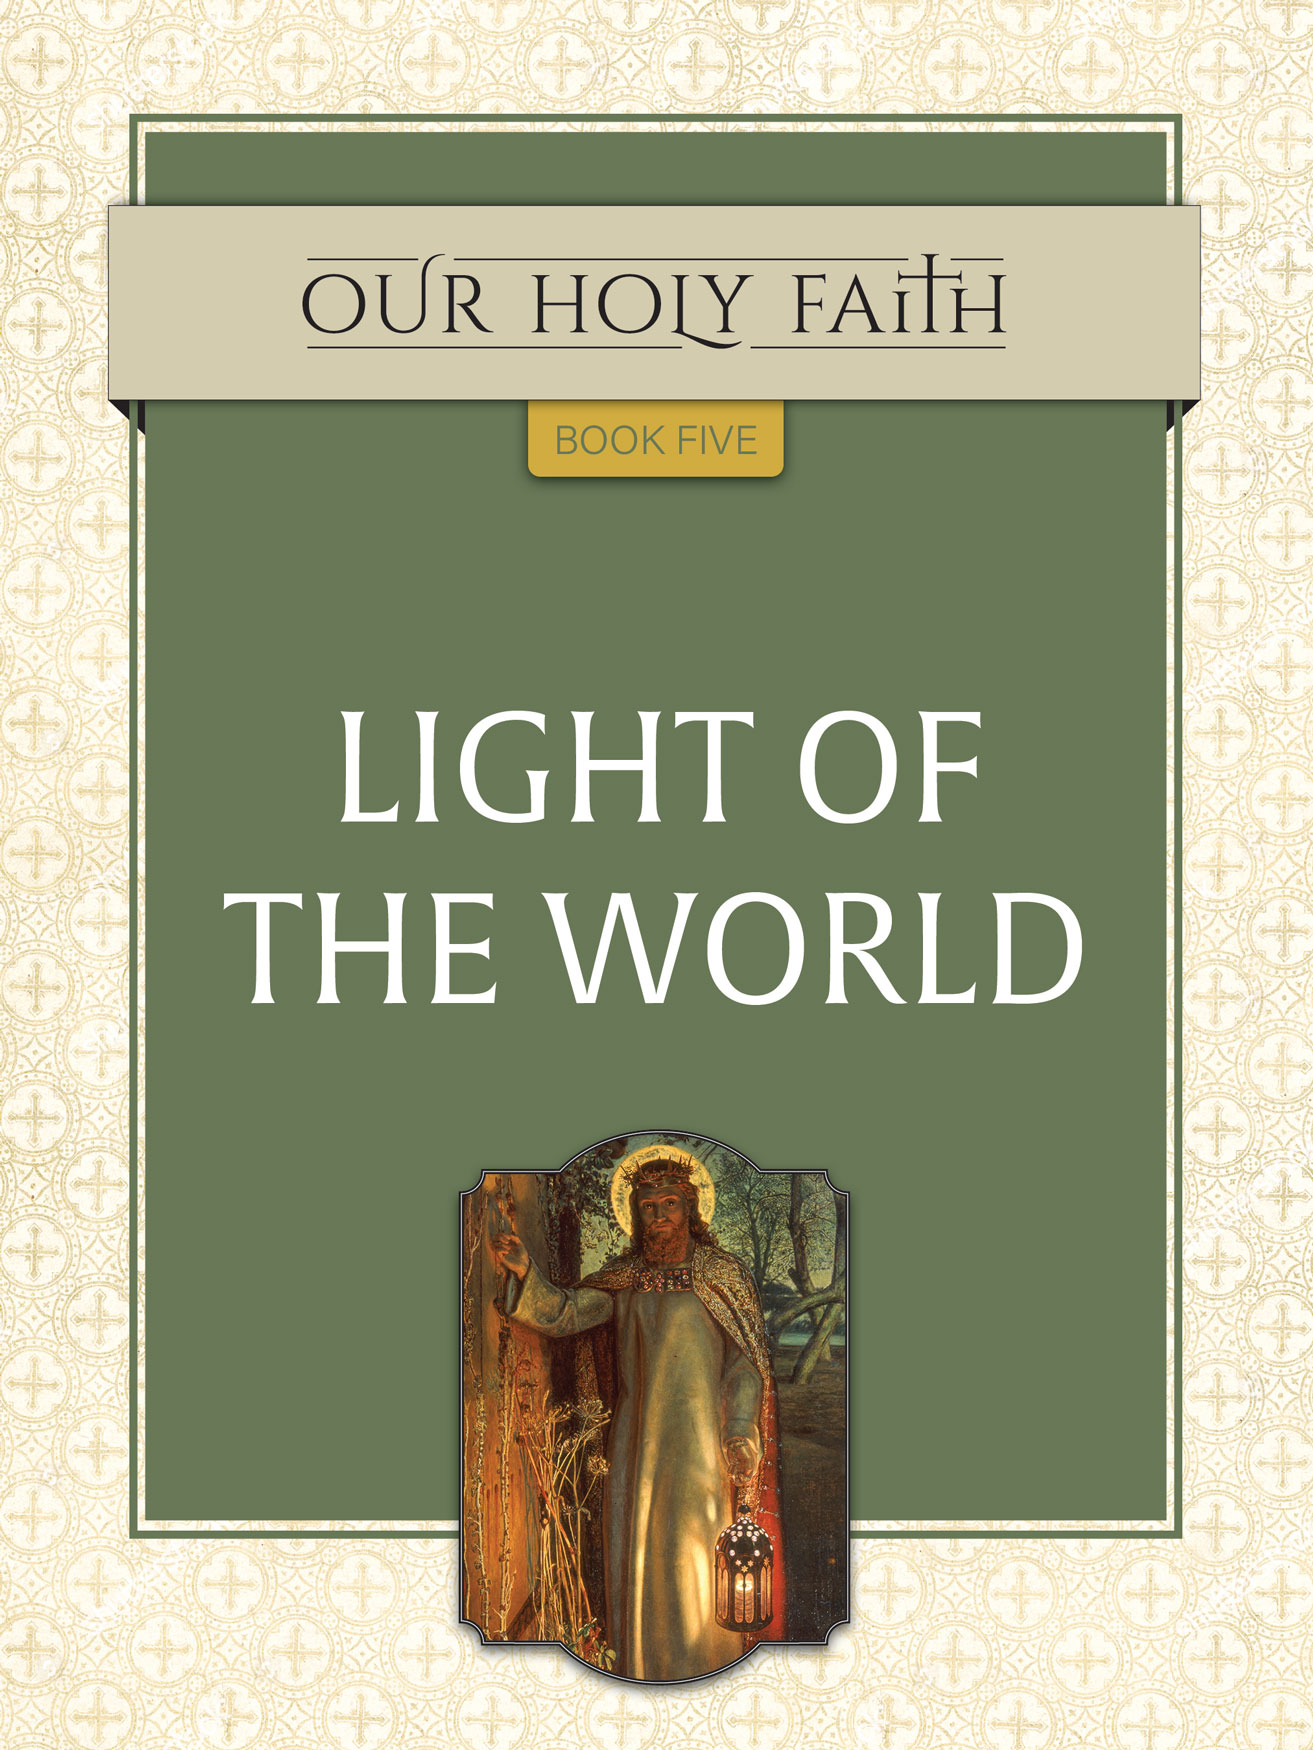 Our Holy Faith Book 5 Light of the World